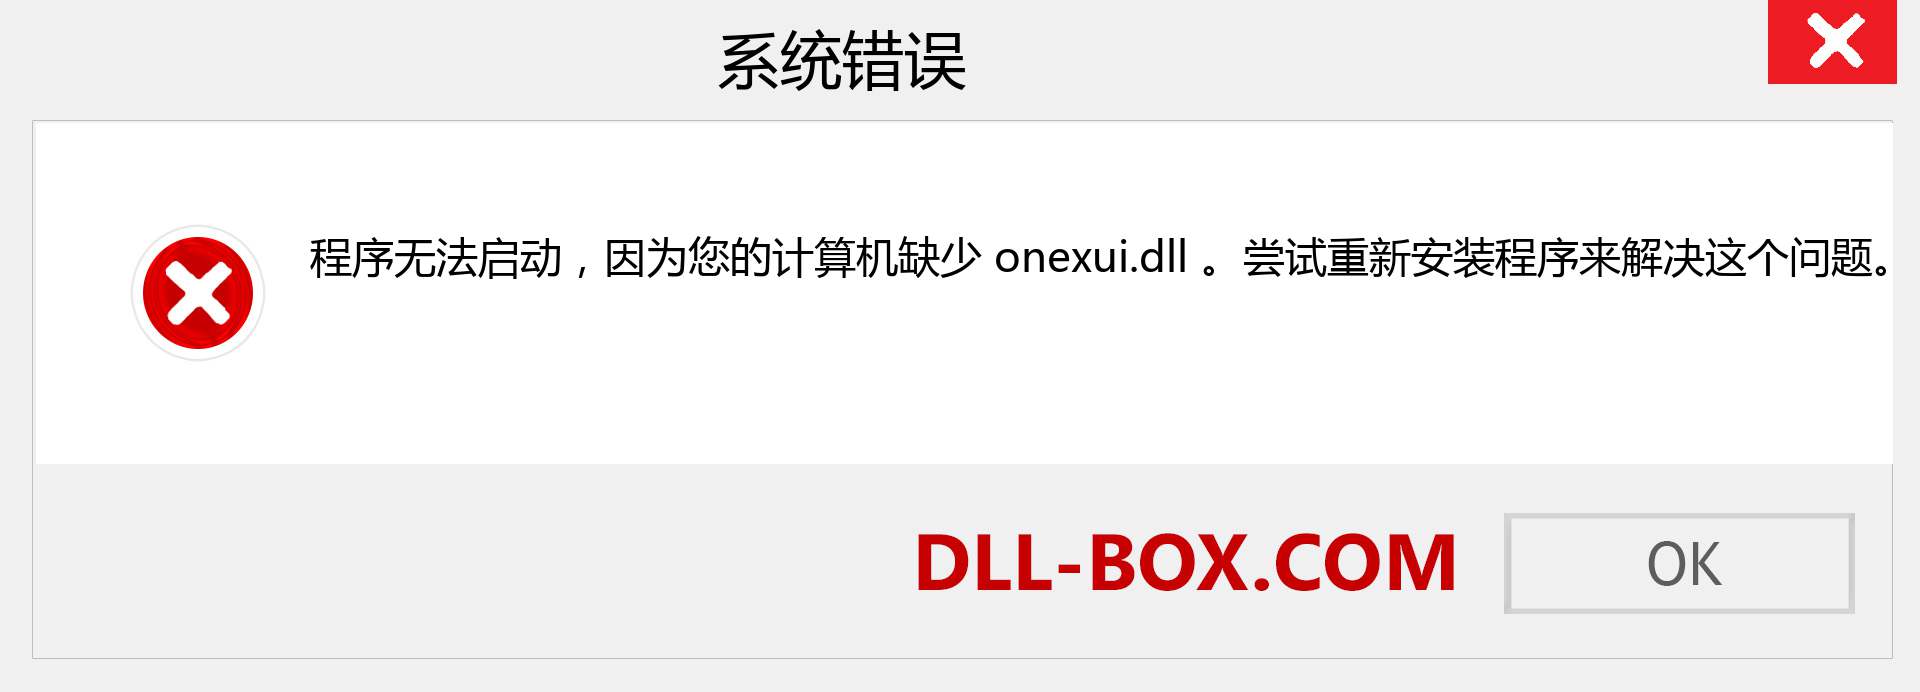 onexui.dll 文件丢失？。 适用于 Windows 7、8、10 的下载 - 修复 Windows、照片、图像上的 onexui dll 丢失错误